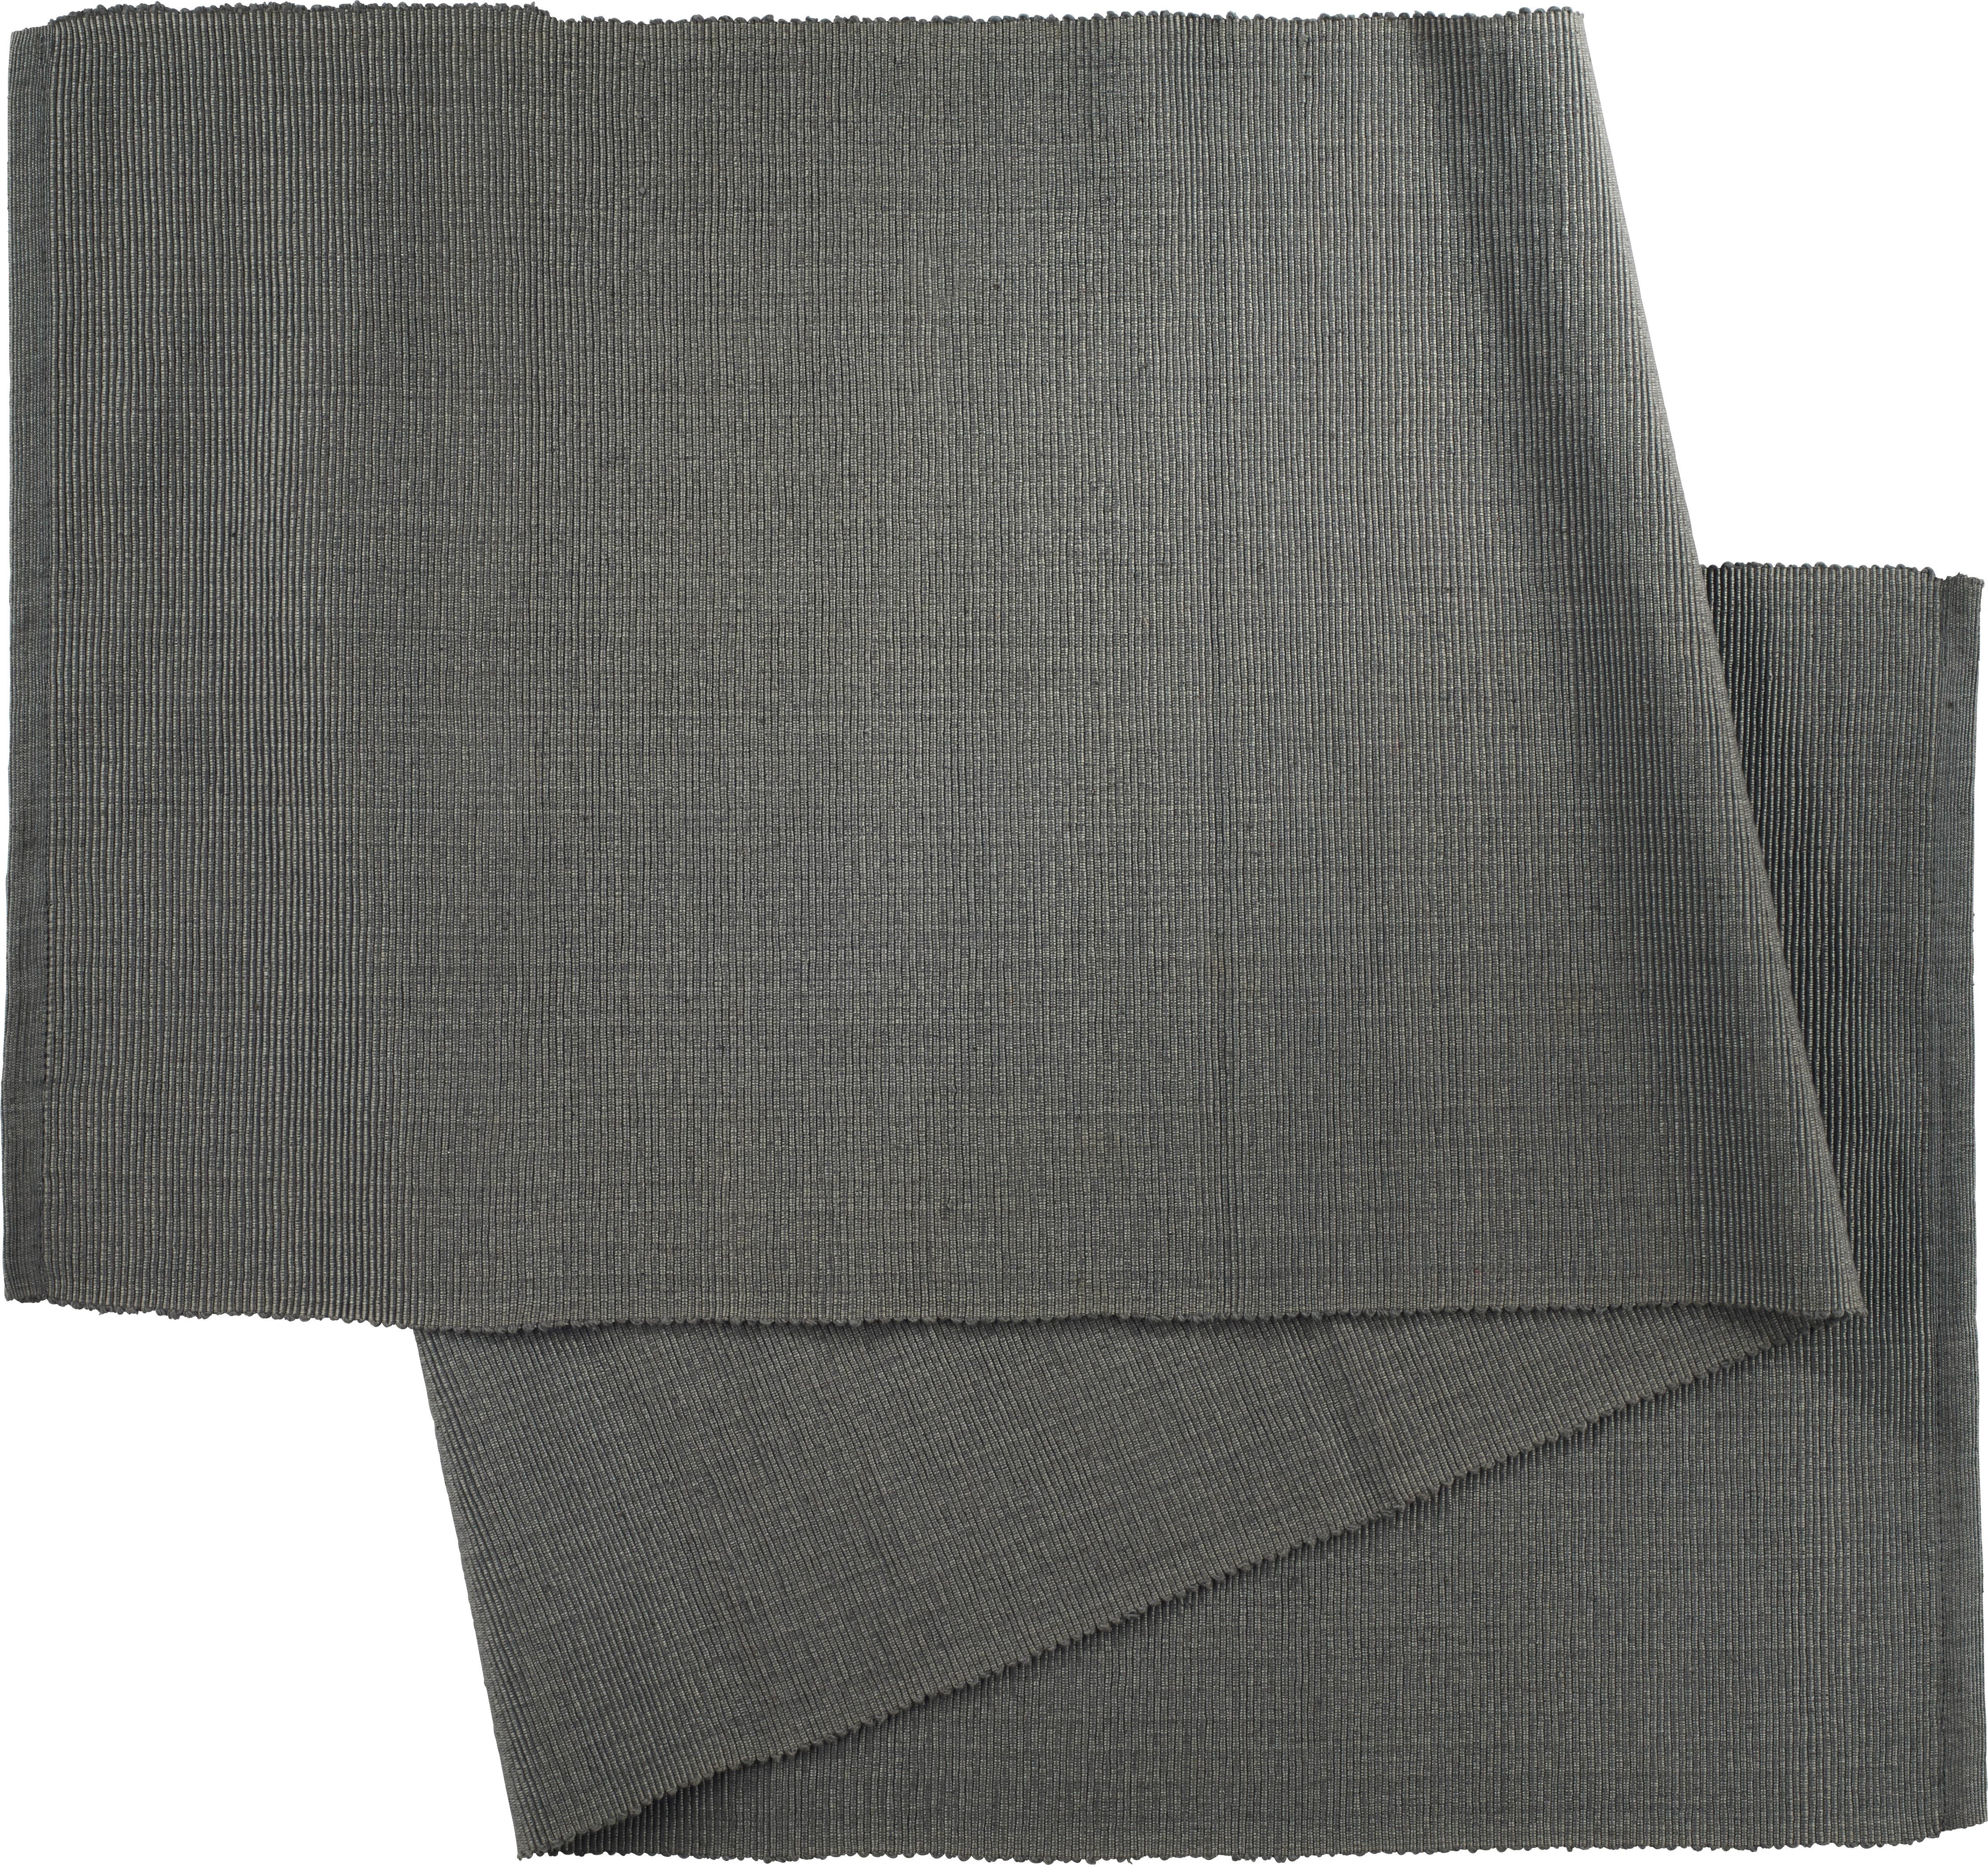 Traversă de masă Maren - antracit, textil (40X/150cm) - Modern Living